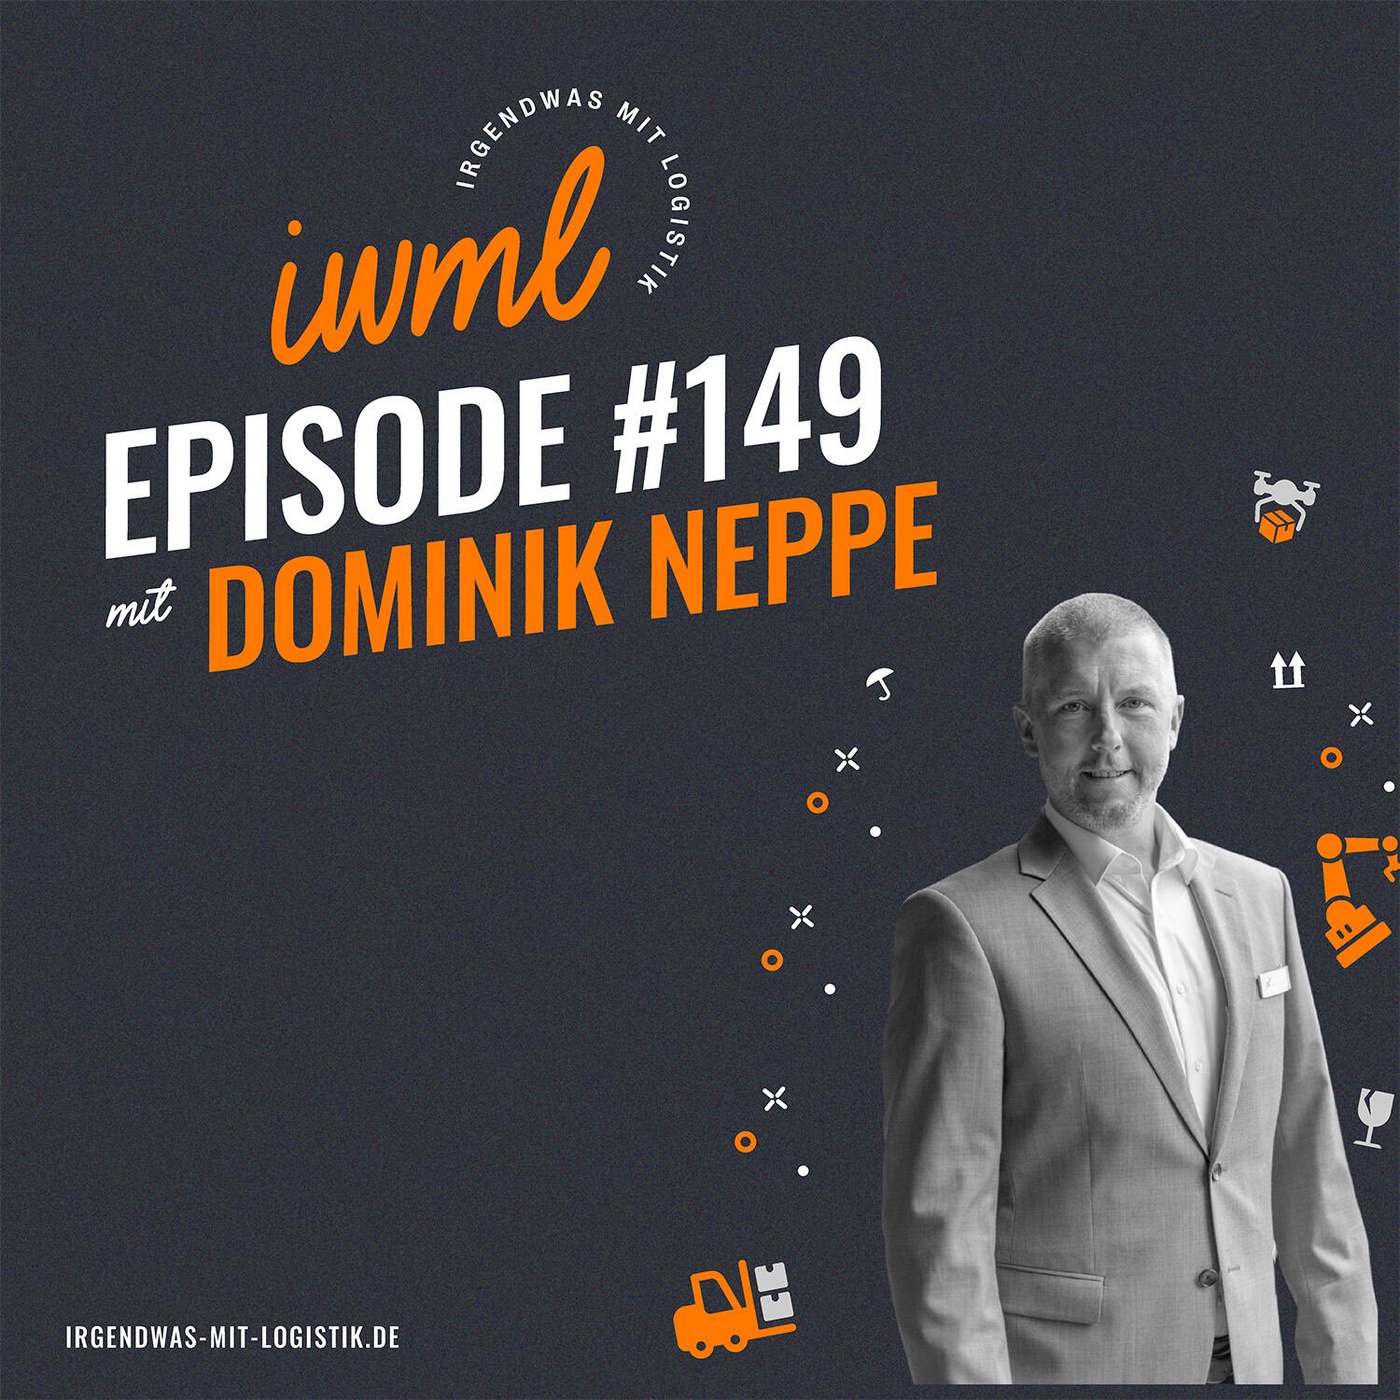 IWML #149 mit Fluxus-Gründer Dominik Neppe